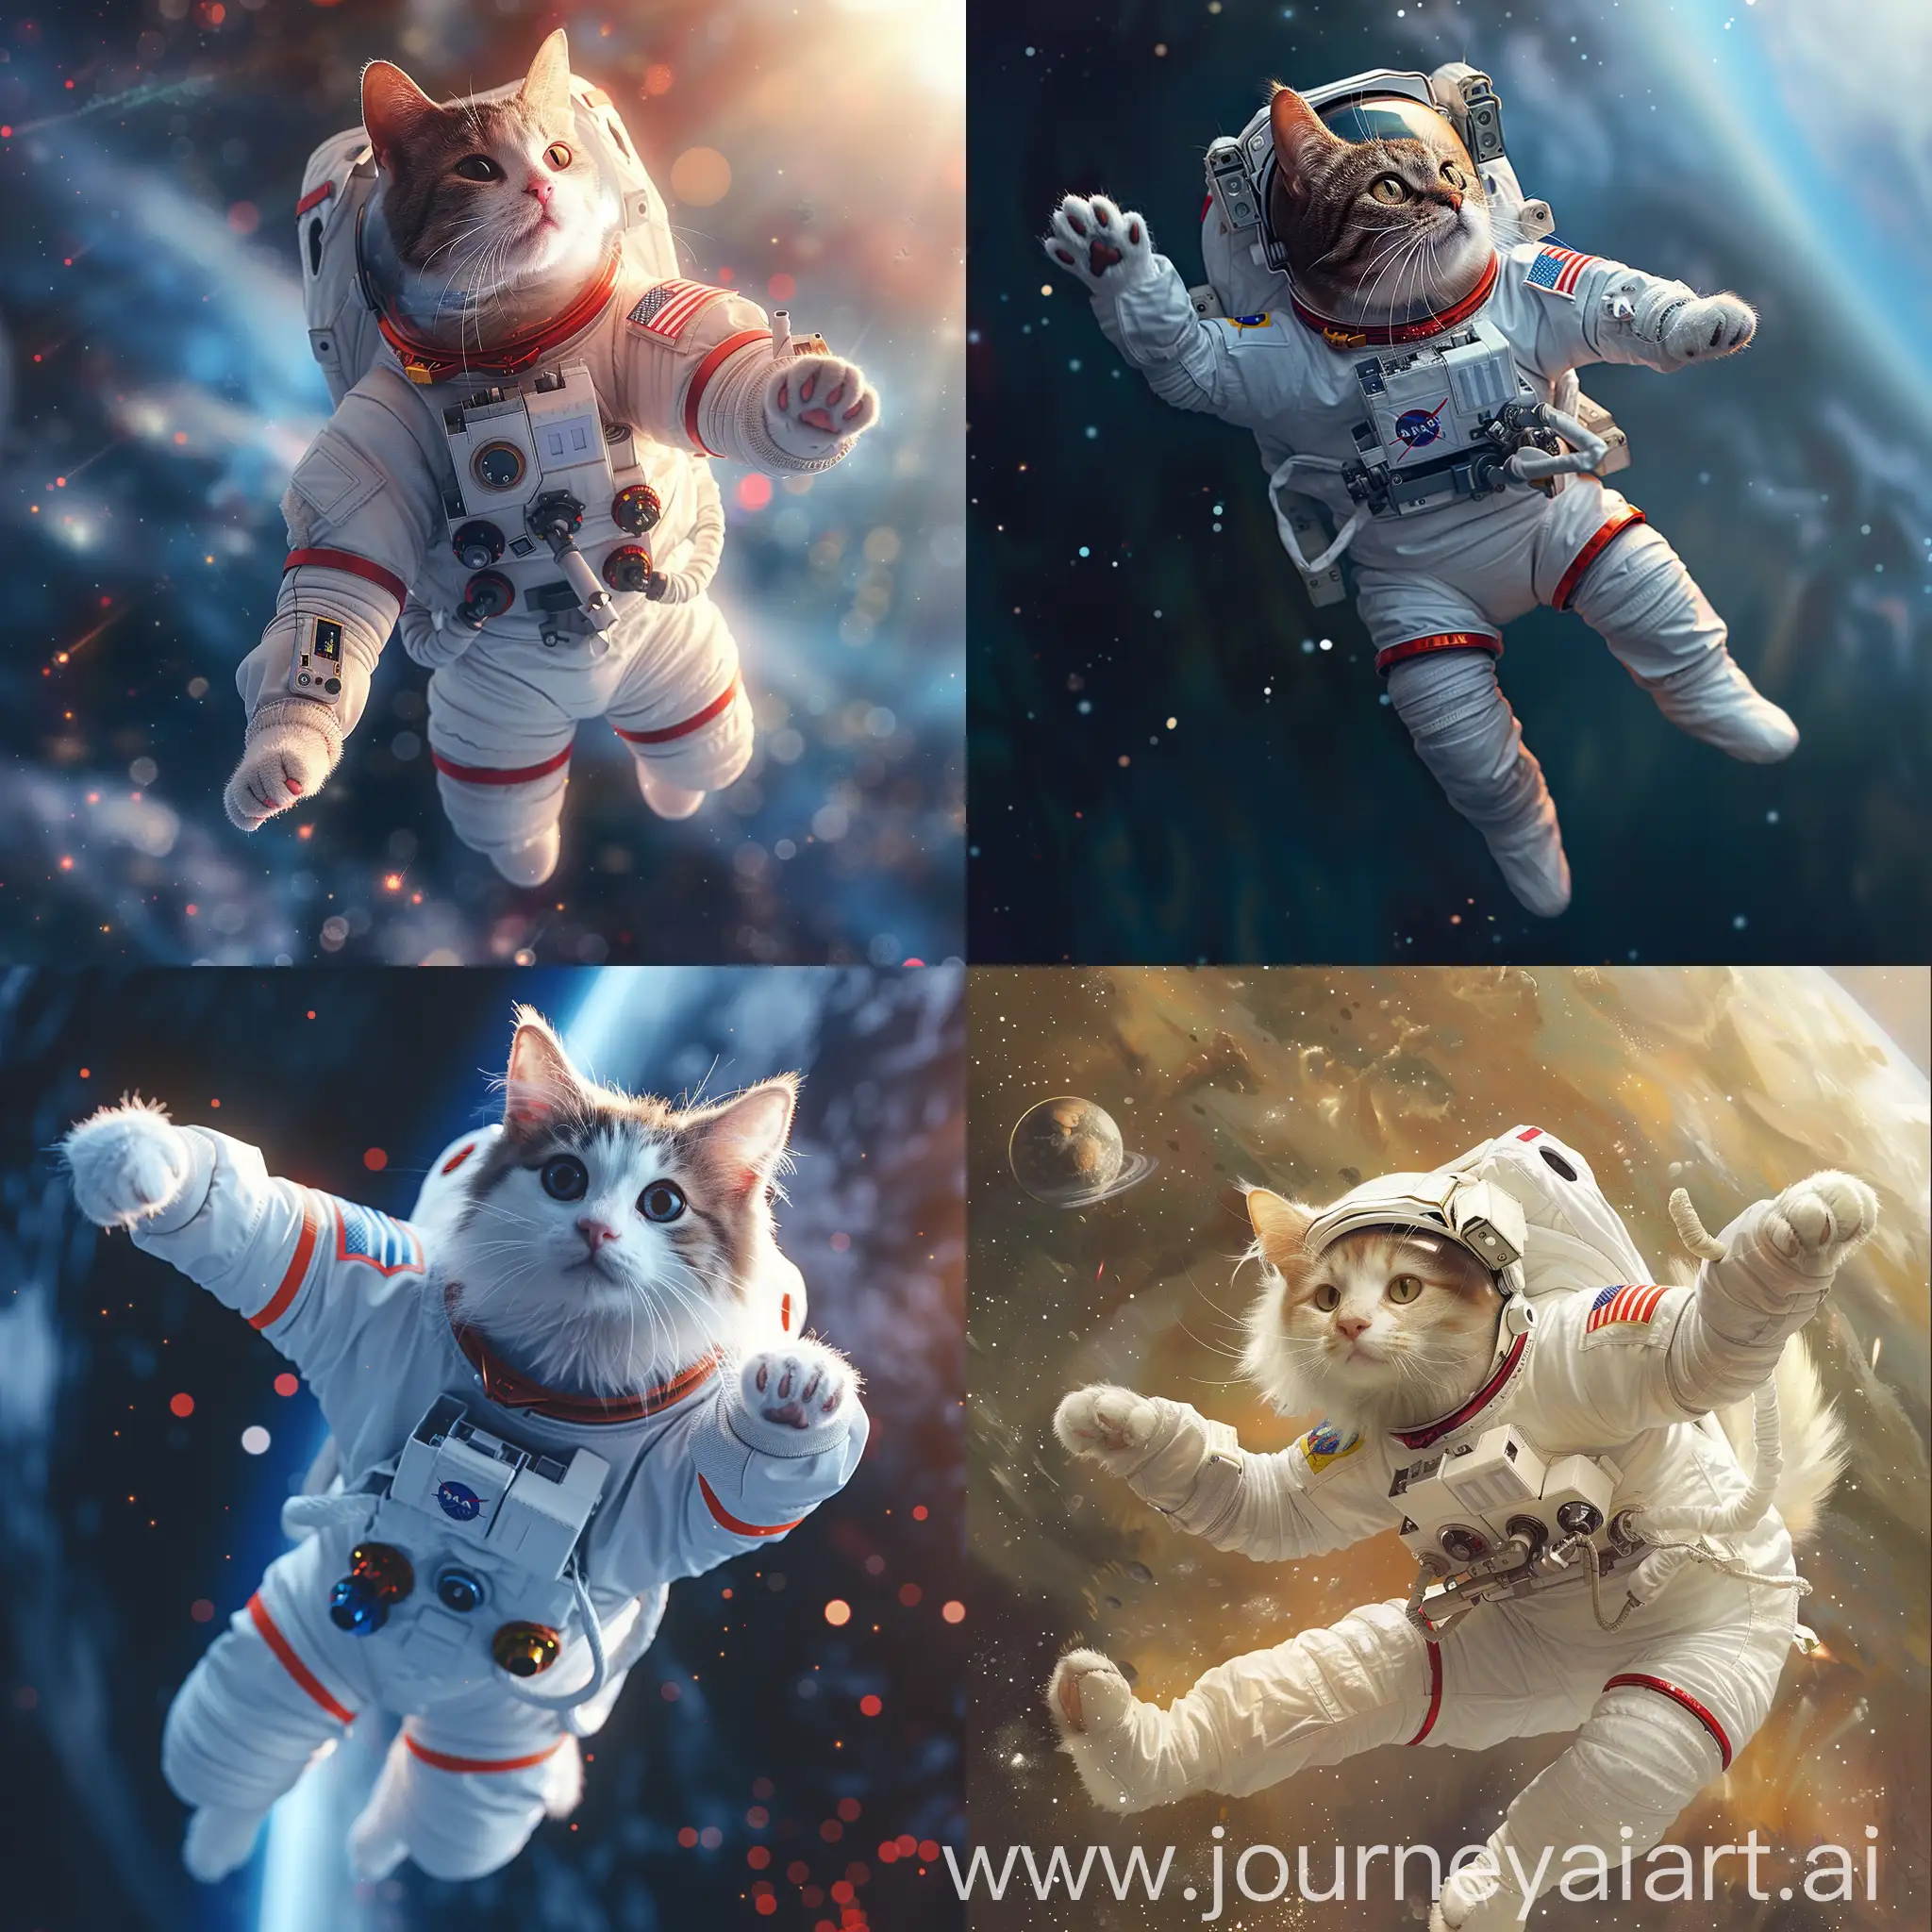 Милый кот, одет в скафандре космонавта, летит в космосе, высокая детализация, гиперреализм